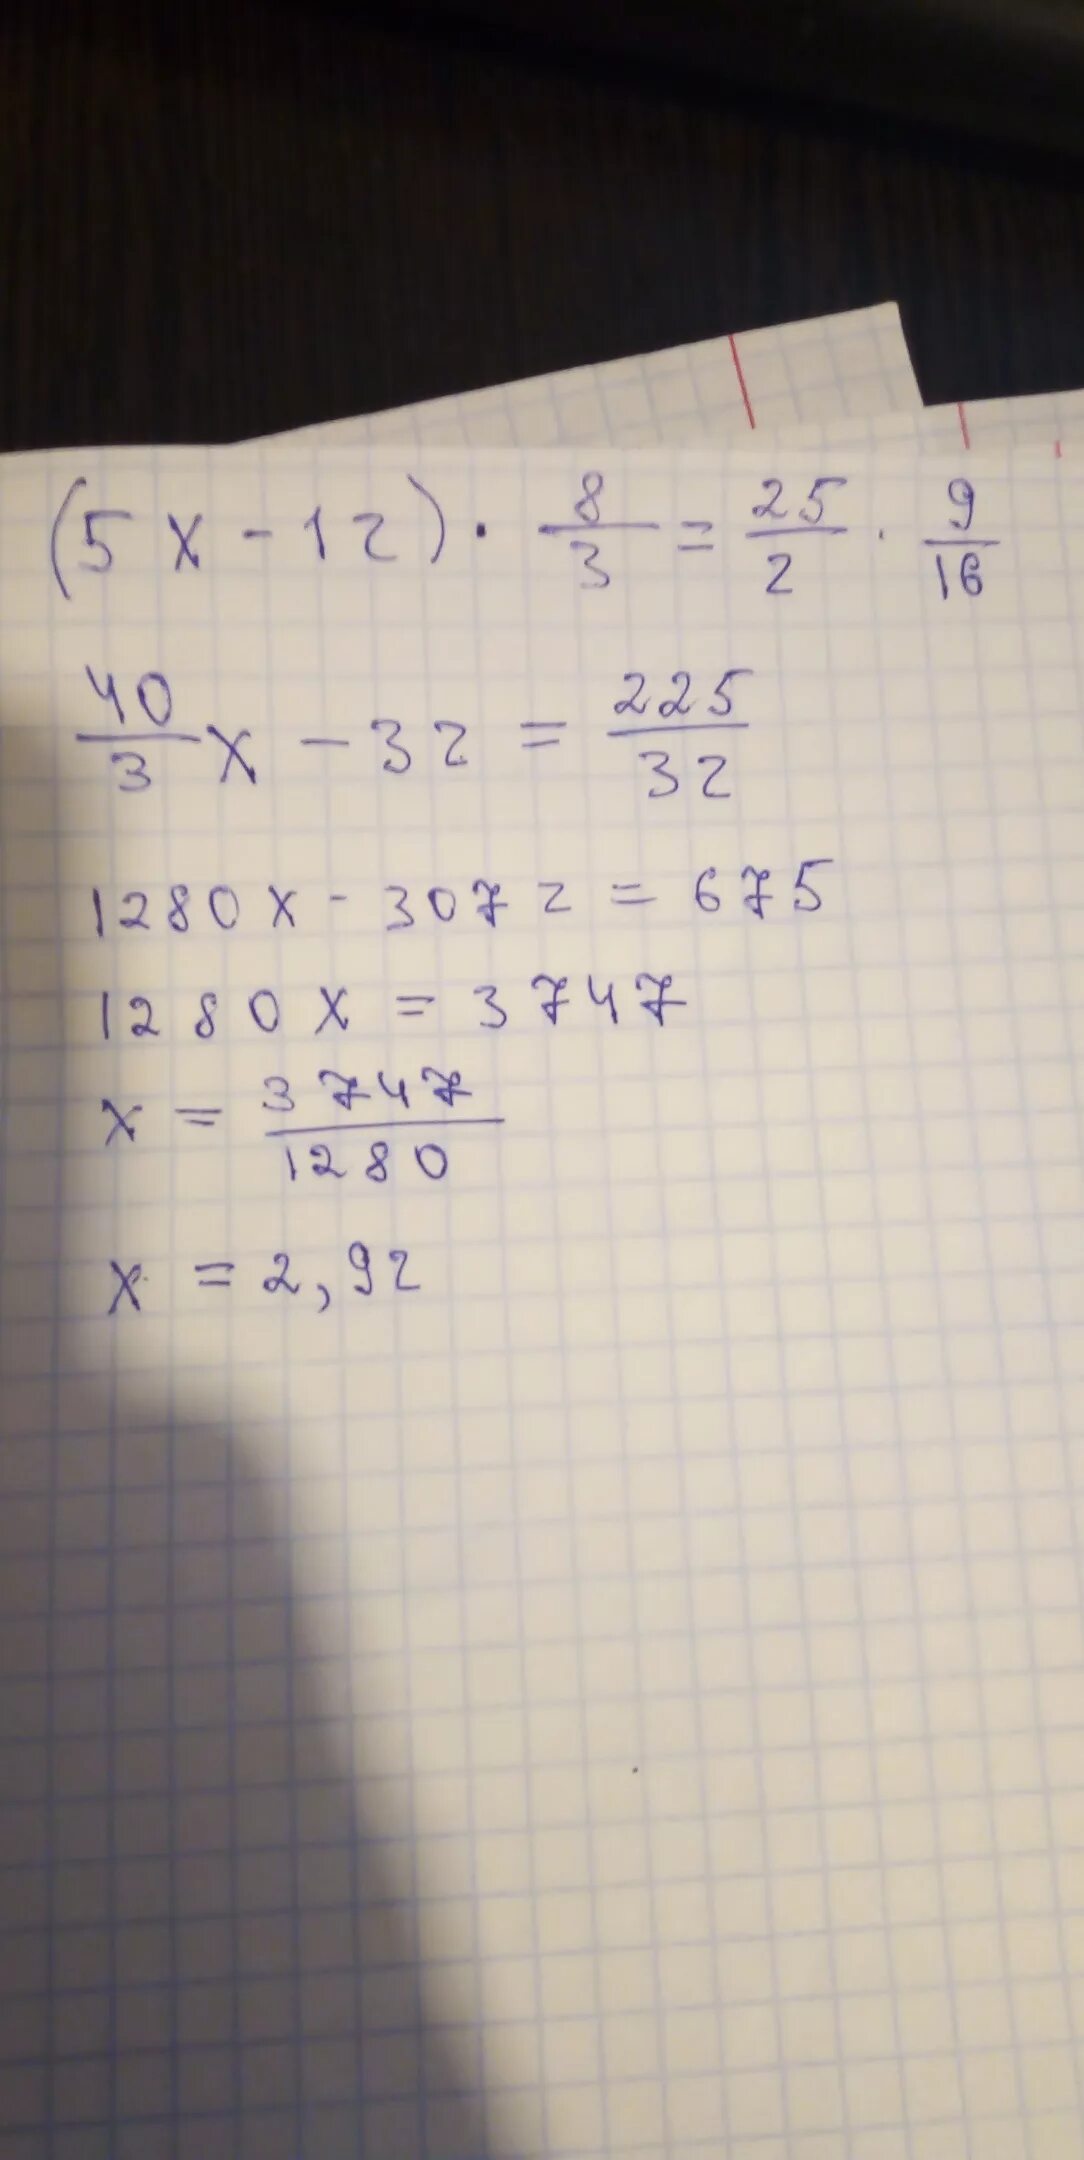 3 8 9 16 решение. 12/Х+5 -12/5. 8 9 16. (Х+3,16)÷2,8=5,2. 9/16 3/4 Минус 3/8.